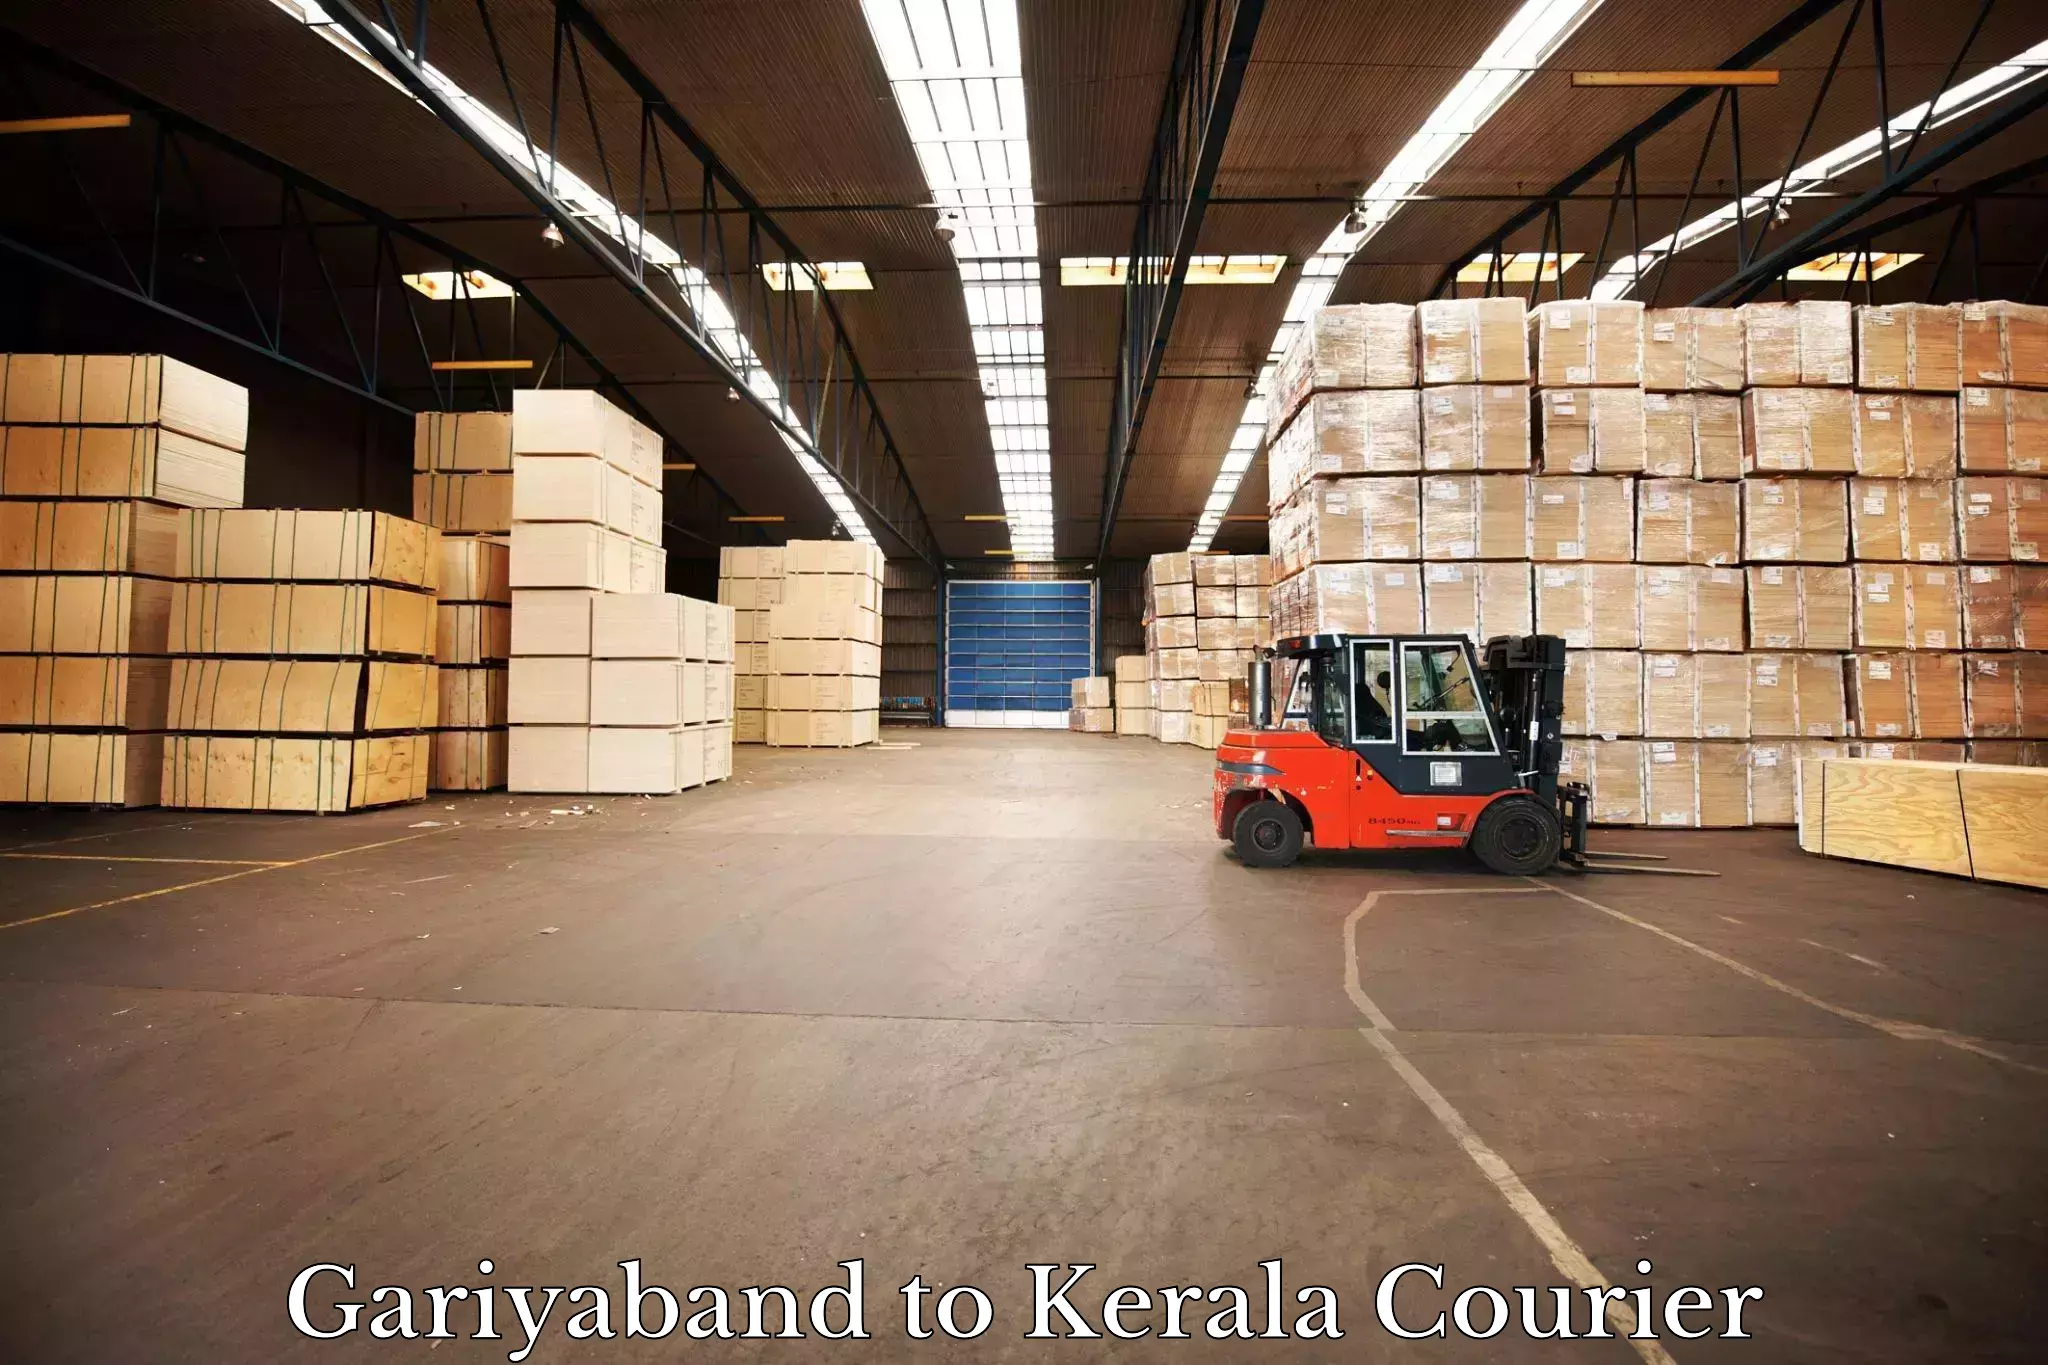 Seamless shipping service in Gariyaband to Kerala